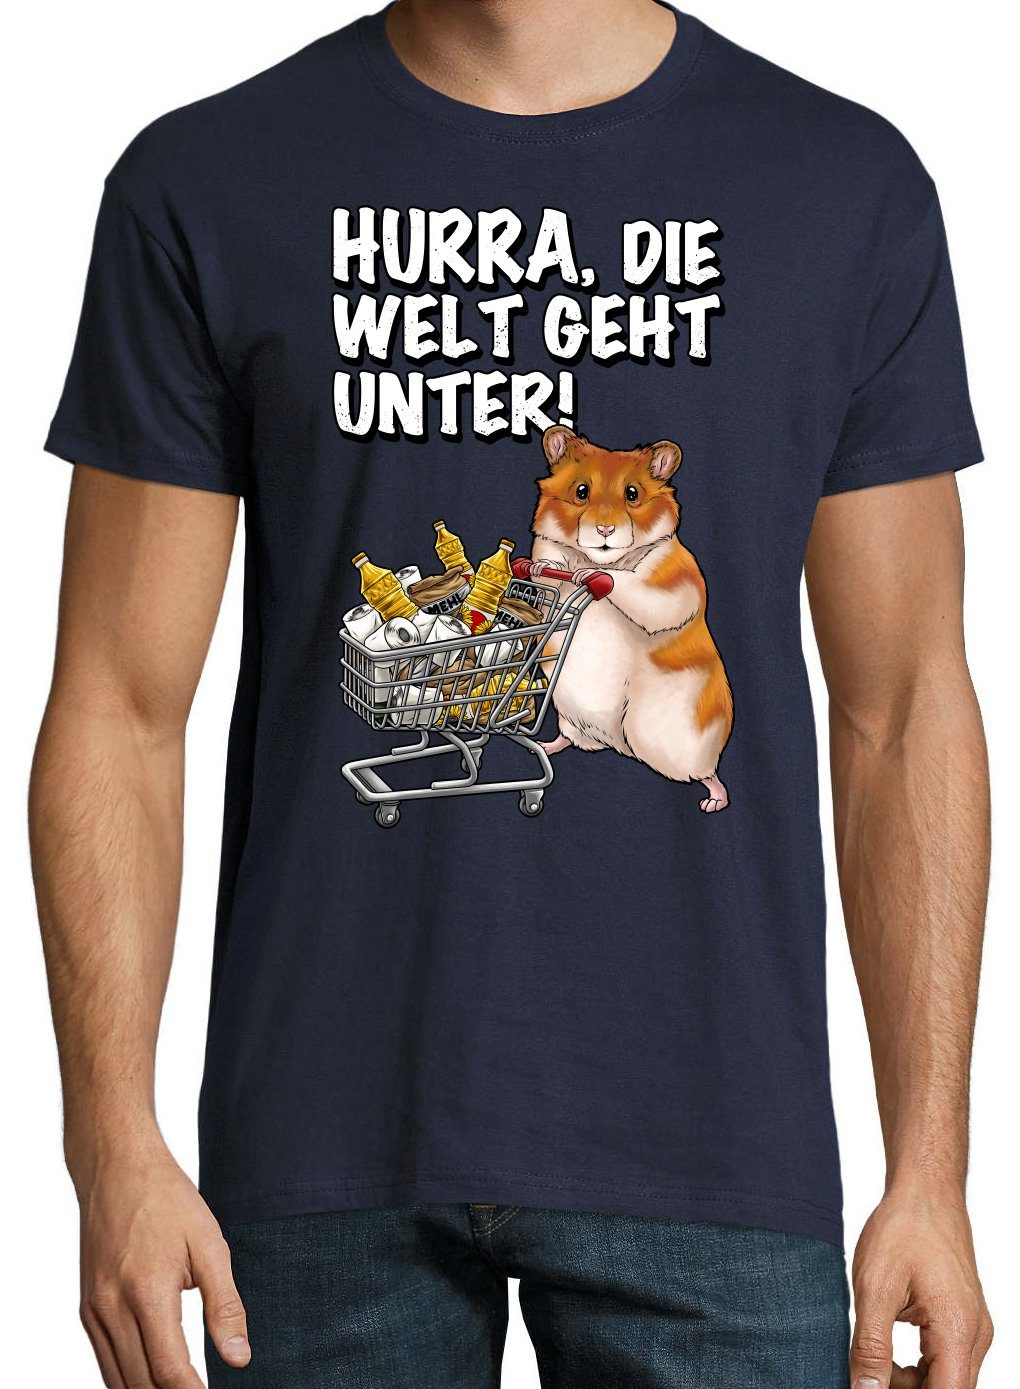 Designz Hamster Herren Navyblau Geht Hurra T-Shirt Print Print-Shirt mit Die Unter Welt Spruch lustigem Youth